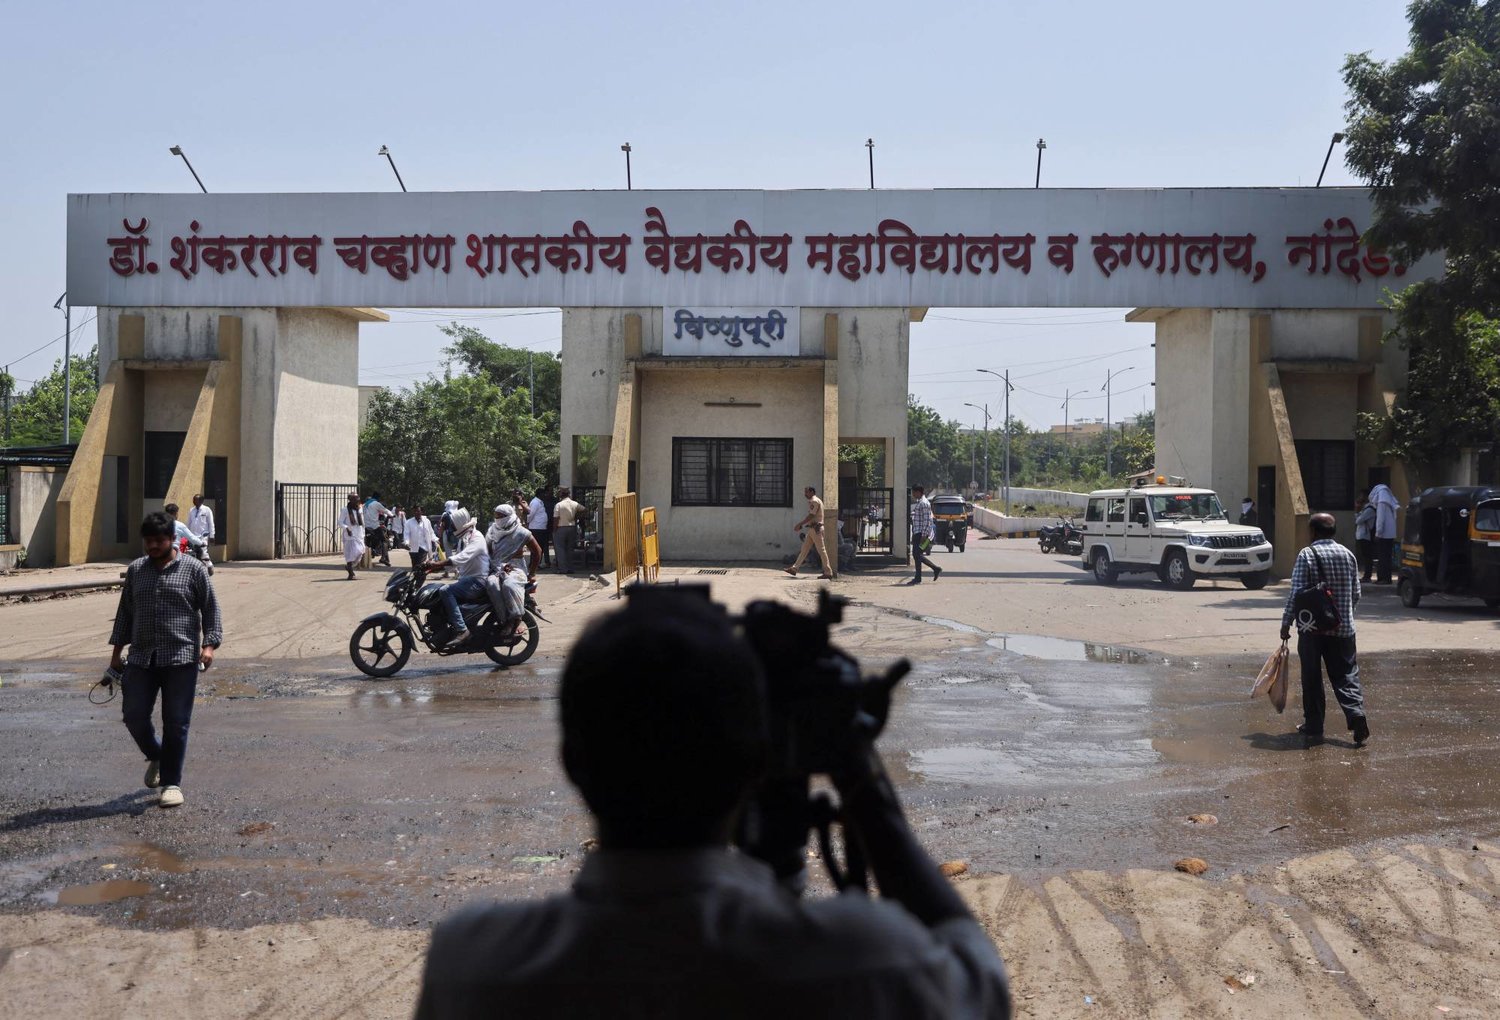 مستشفى شانكاراو تشافان الحكومي في منطقة نانديد في الهند (رويترز)